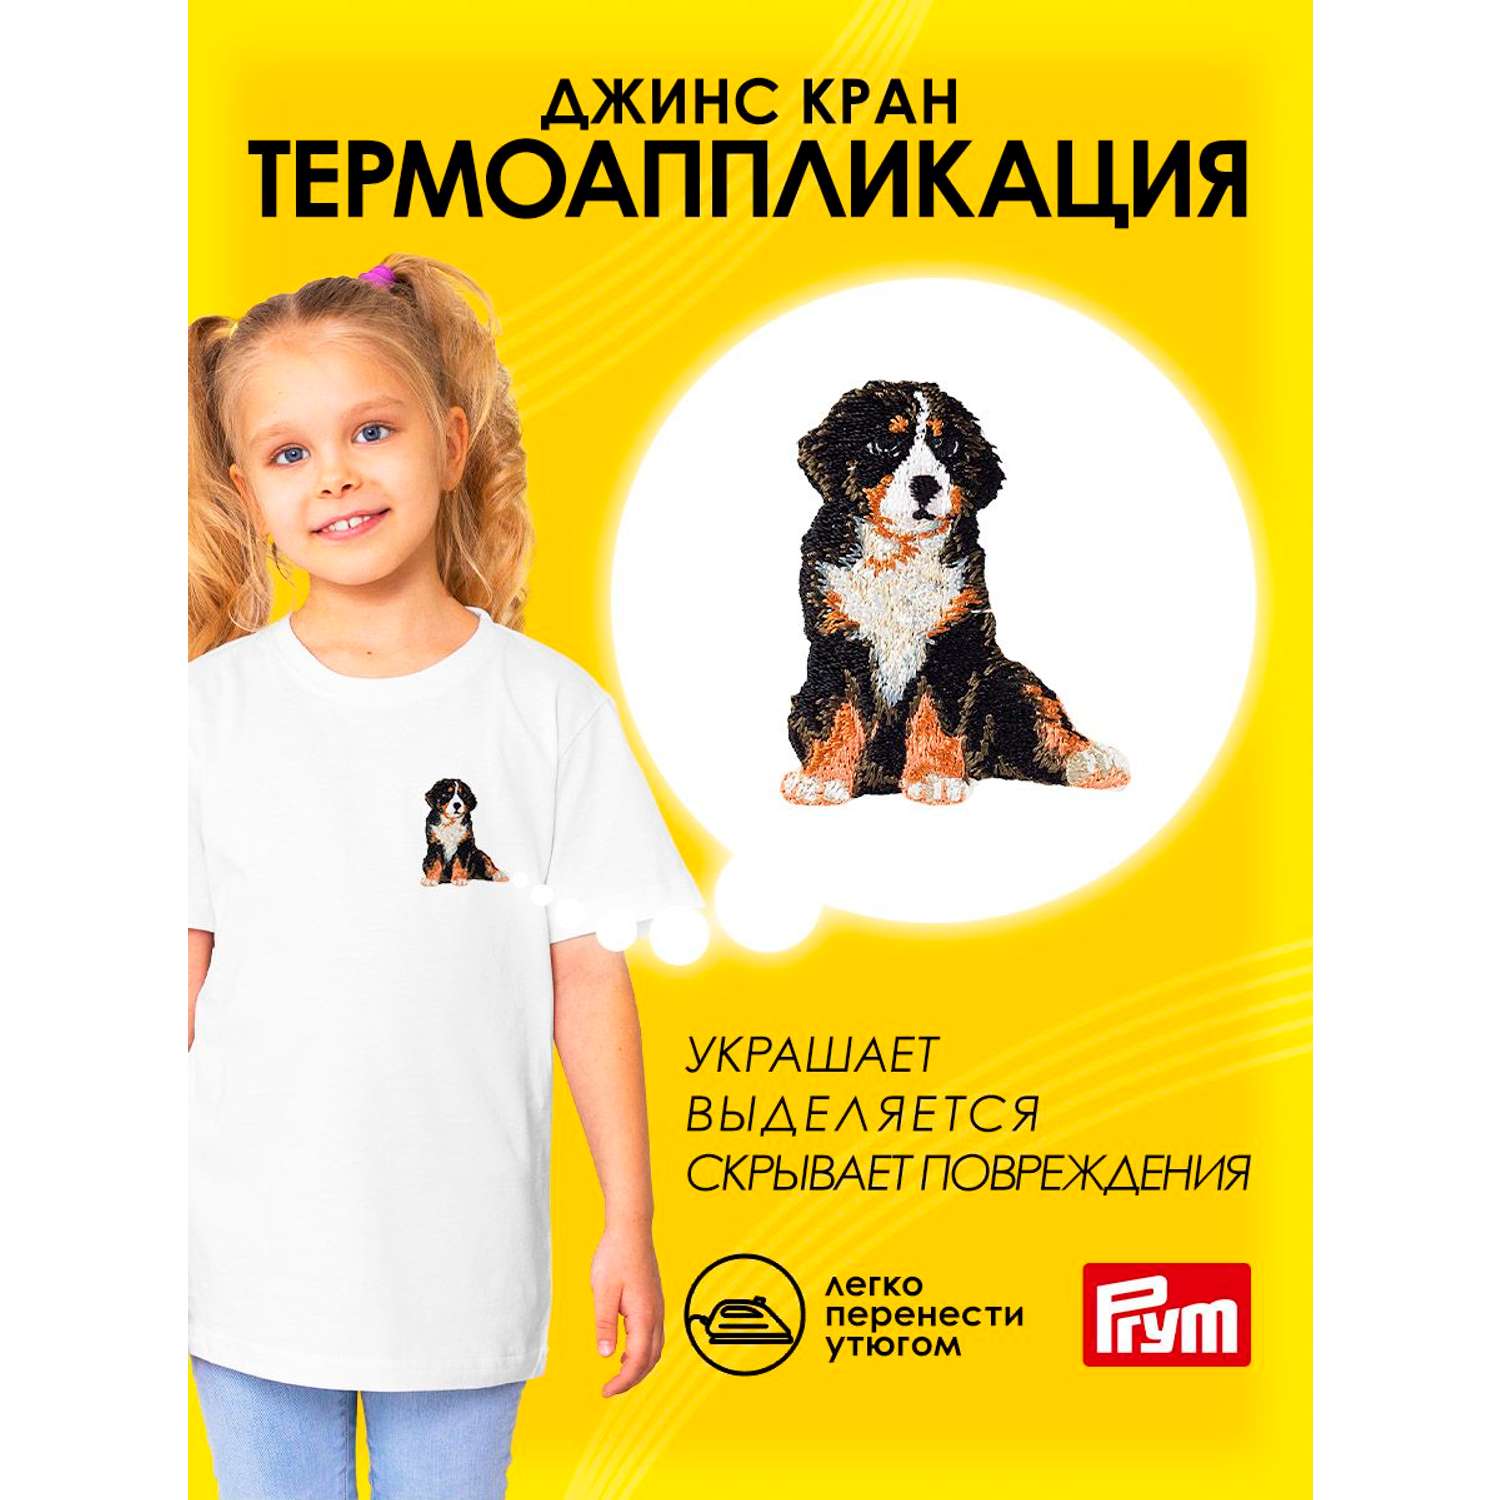 Термоаппликация Prym нашивка Альпийская собака 5.5х4.4 см для ремонта и украшения одежды 925578 - фото 1